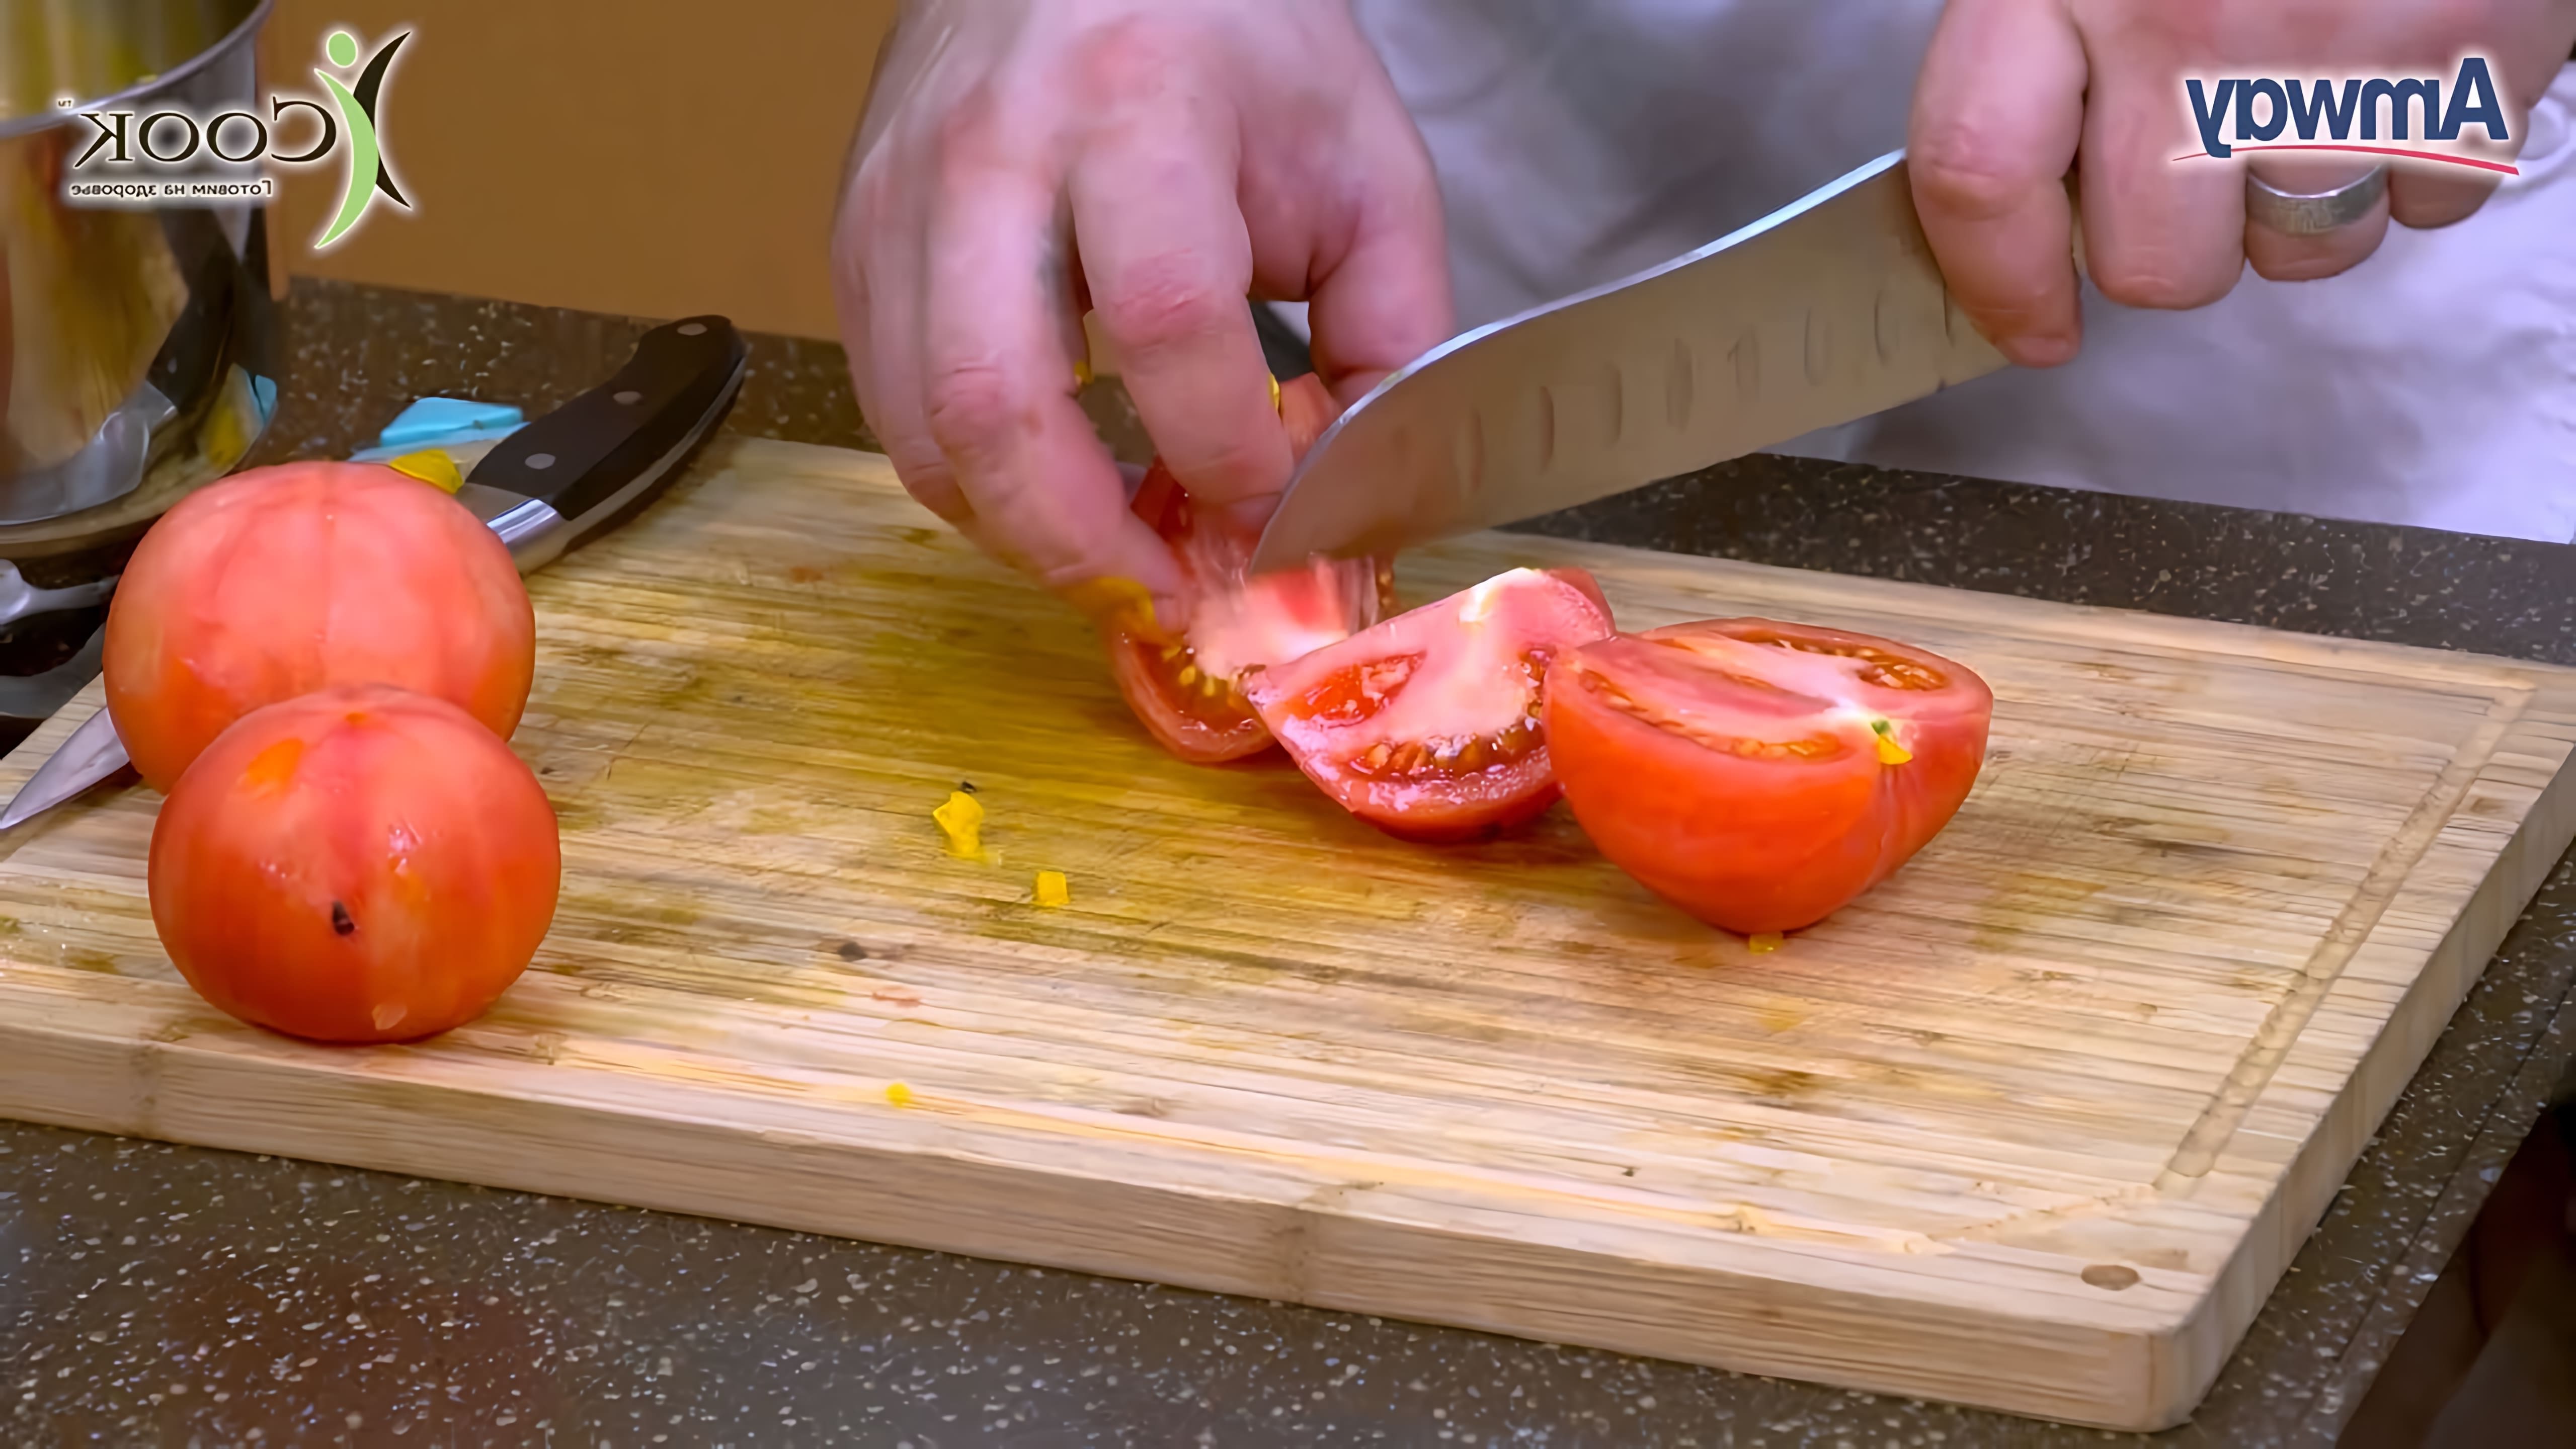 Брускетта с томатами и базиликом - рецепт и пошаговая демонстрация его приготовления от Алексея Семенова, ... 